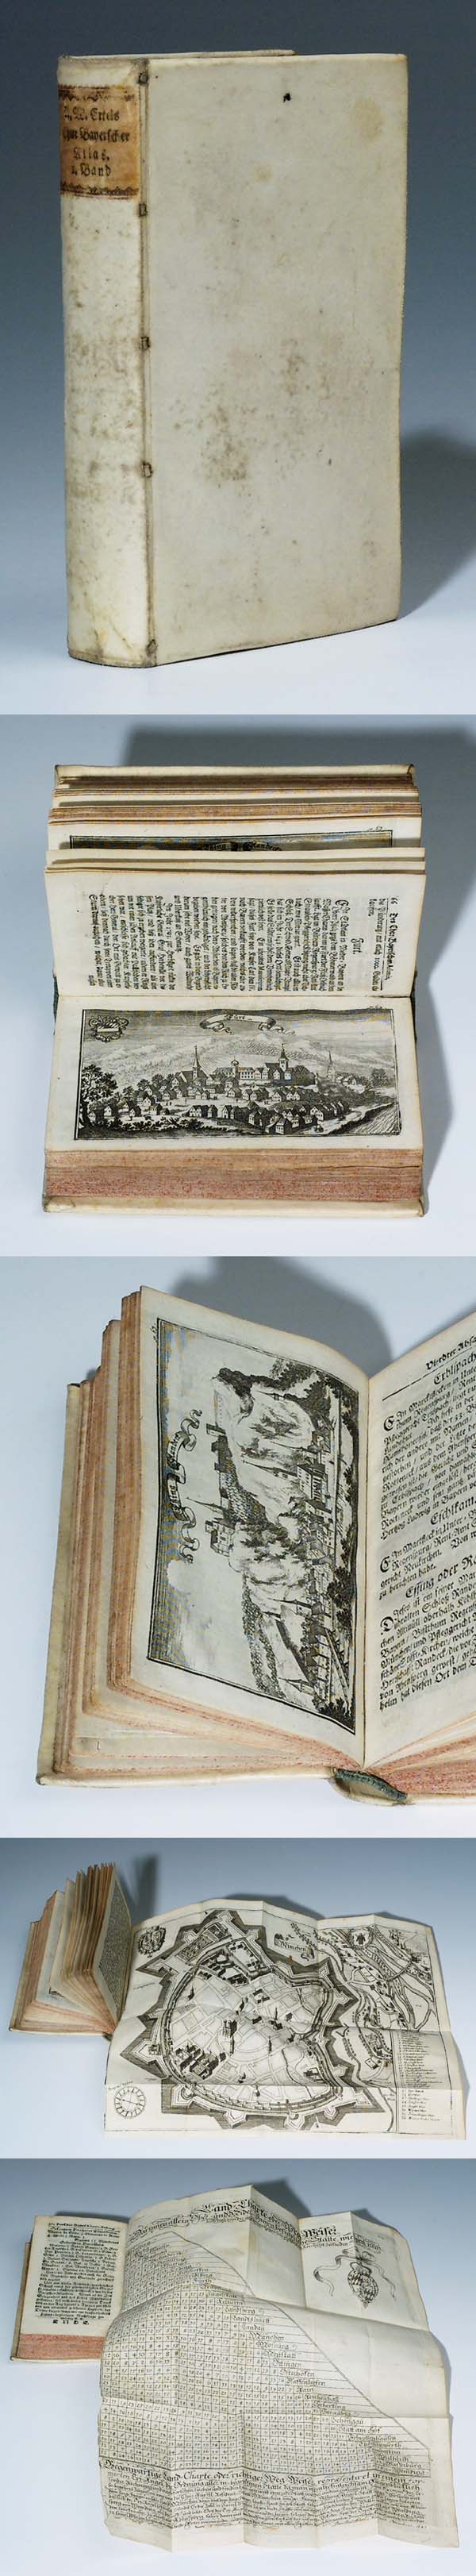 Chur Bayrischer Atlas 1705.